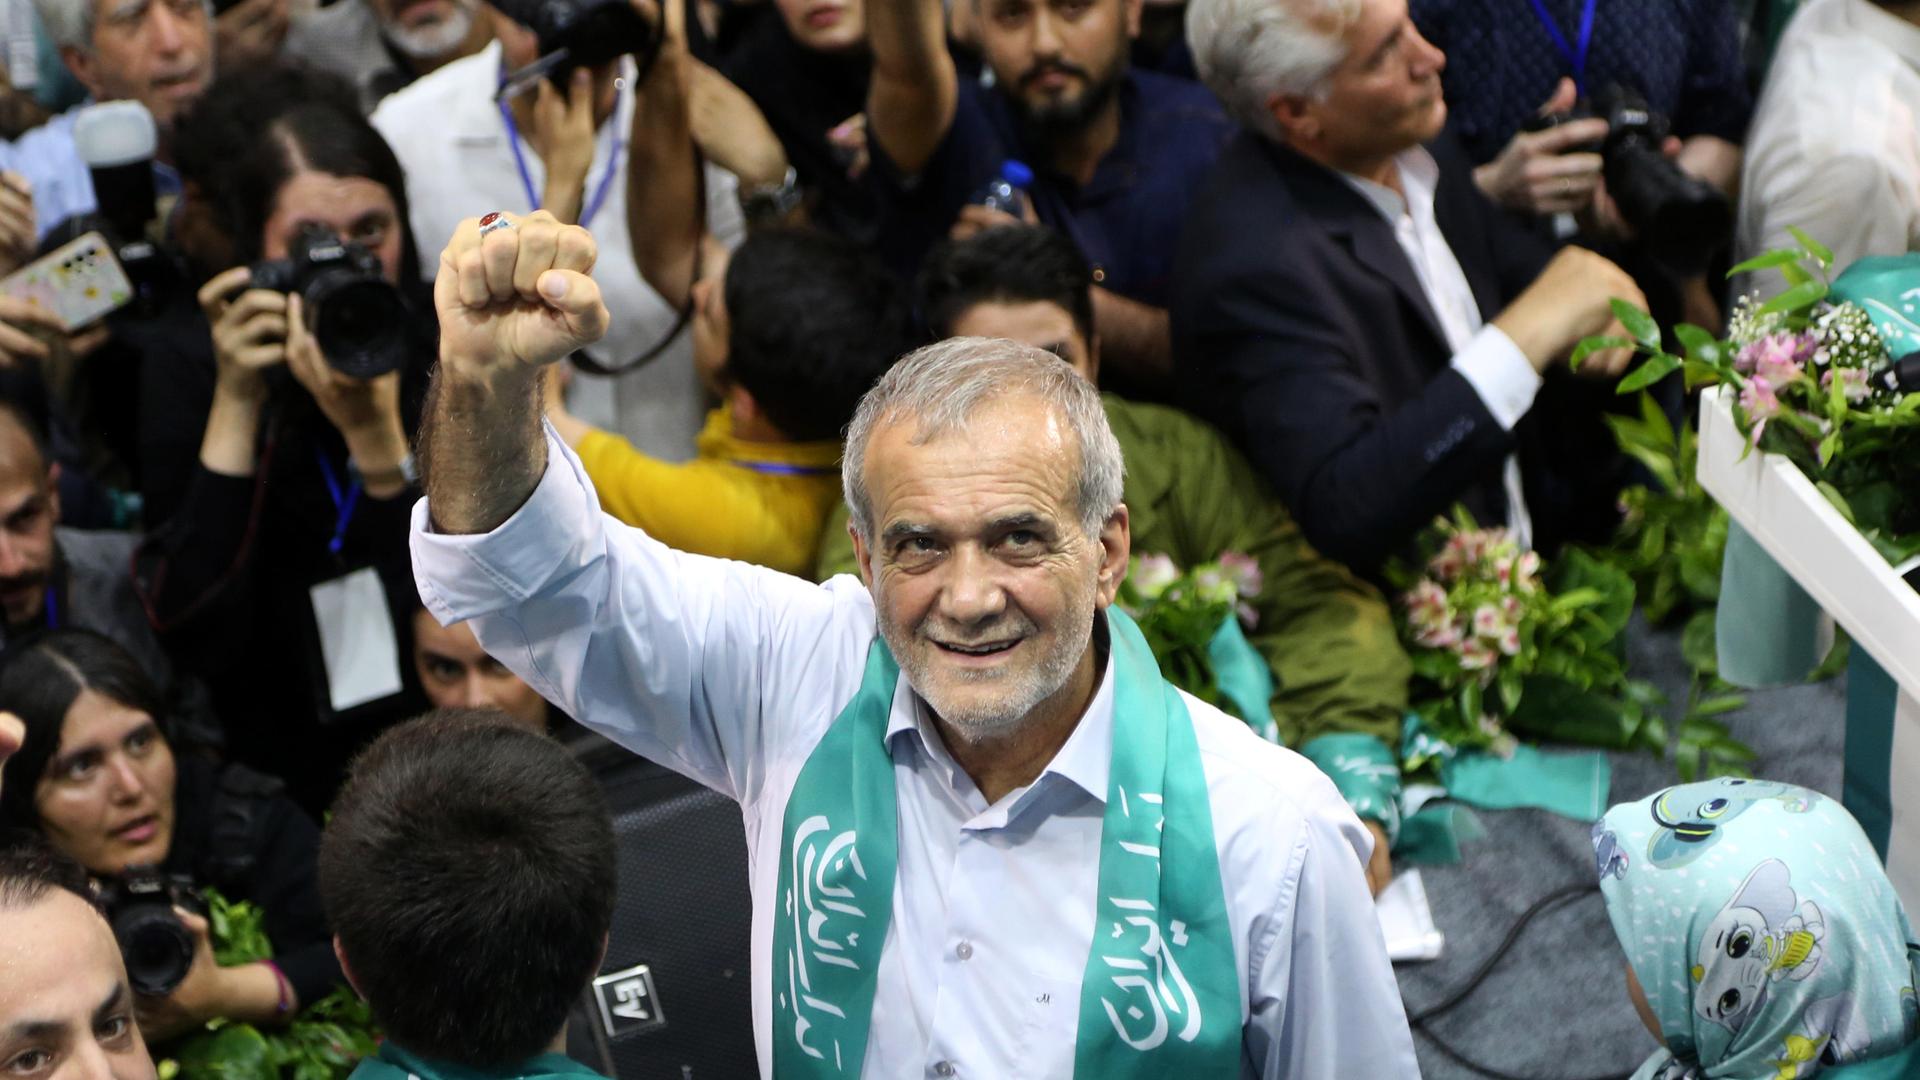 Der iranische Präsidentschaftskandidat Masoud Pezeshkian bei einer Wahlkampfveranstaltung in Teheran. Er streckt die rechte Faust in die Luft und lächelt umringt von Menschen nach oben in die Kamera.